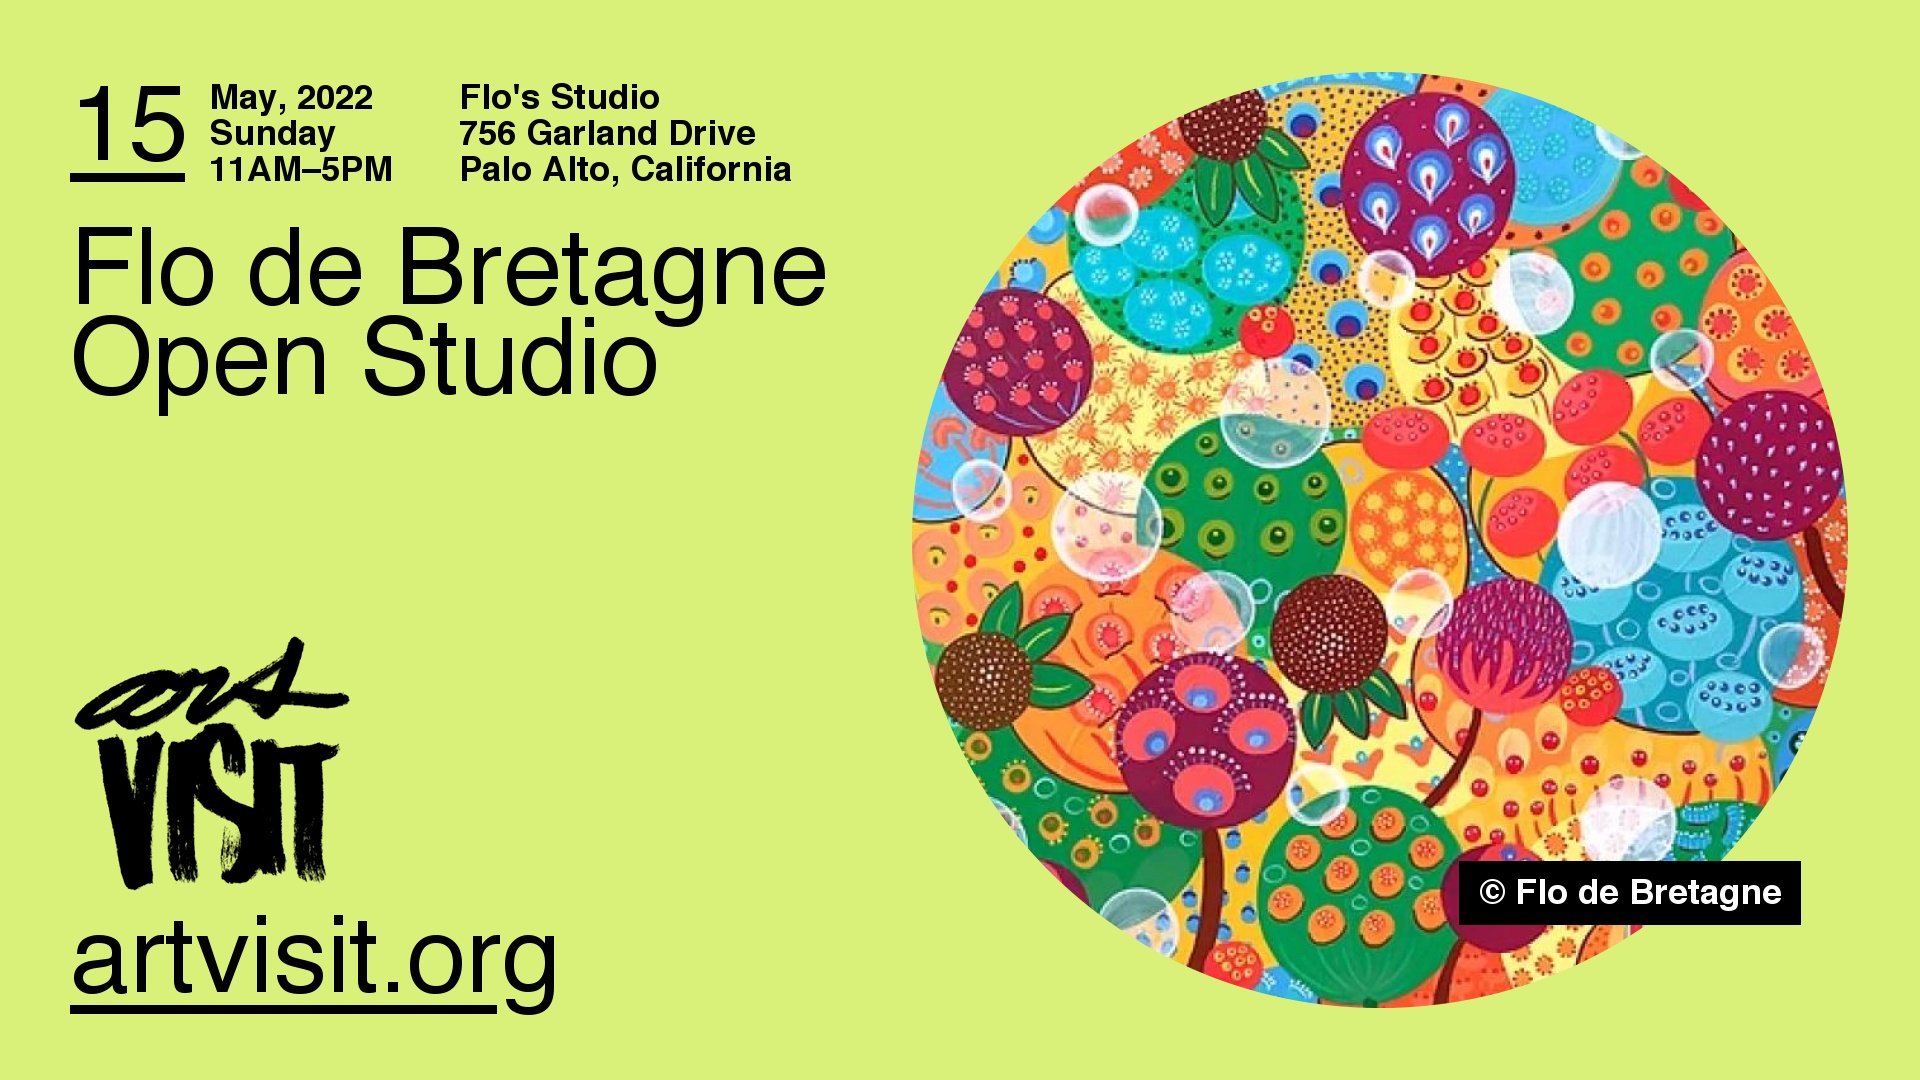 Flo de Bretagne Open Studio